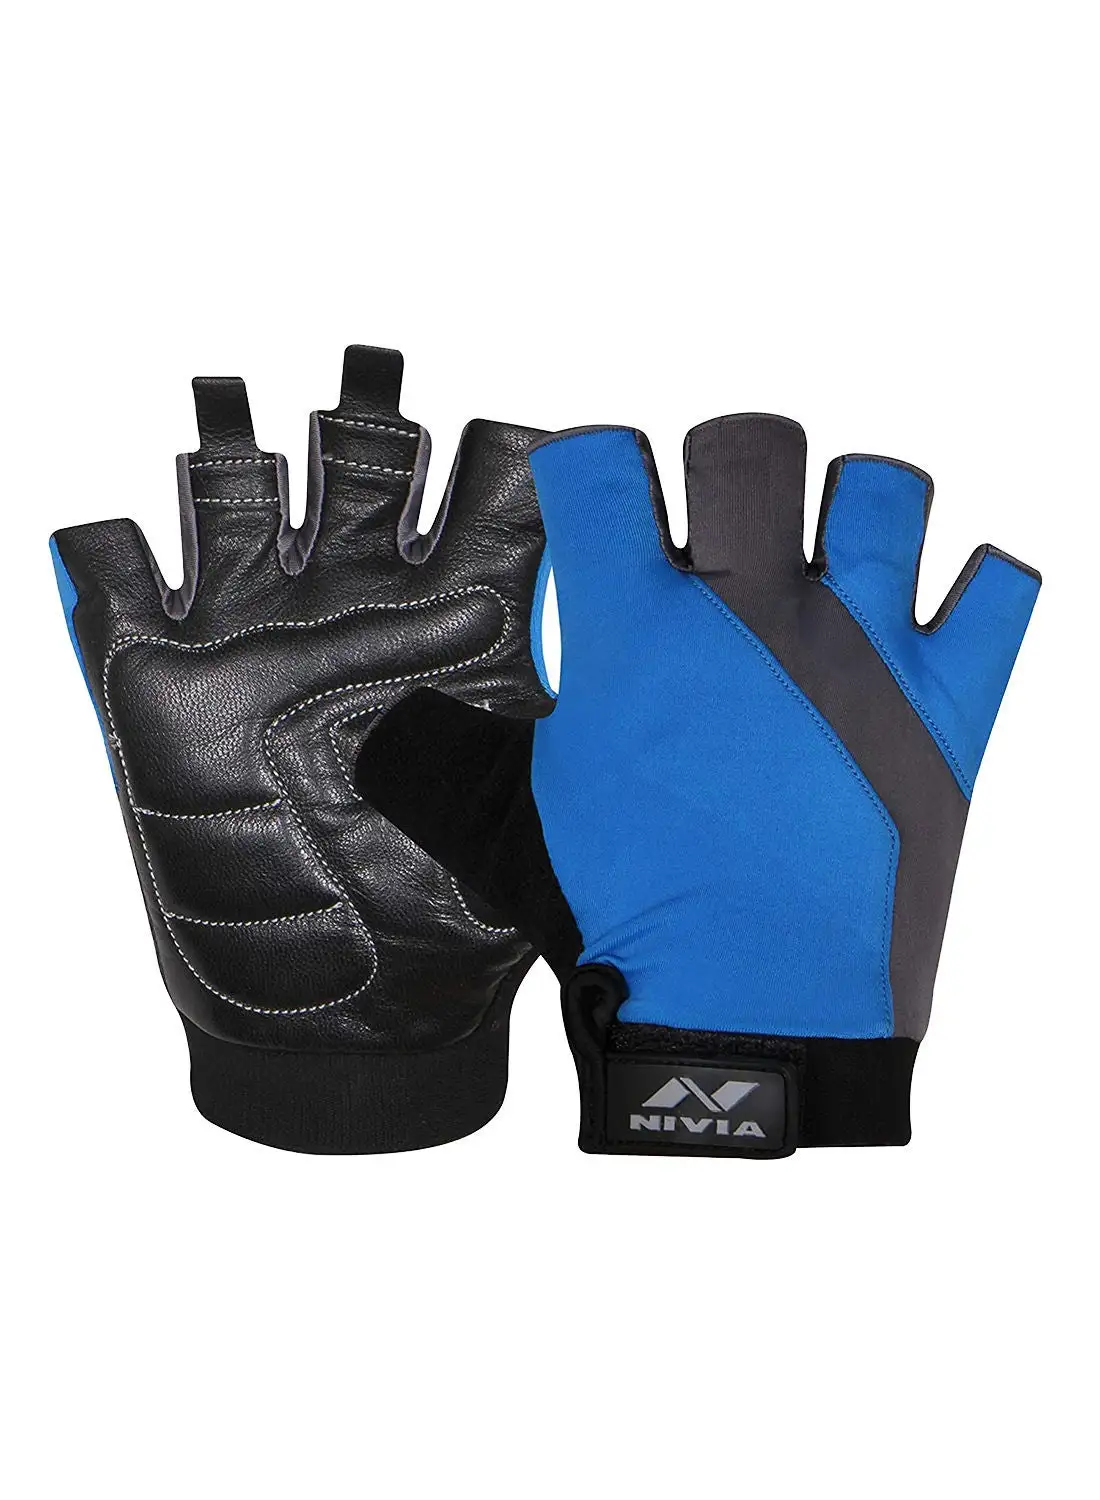 Nivia New Dragon Sports Glovem